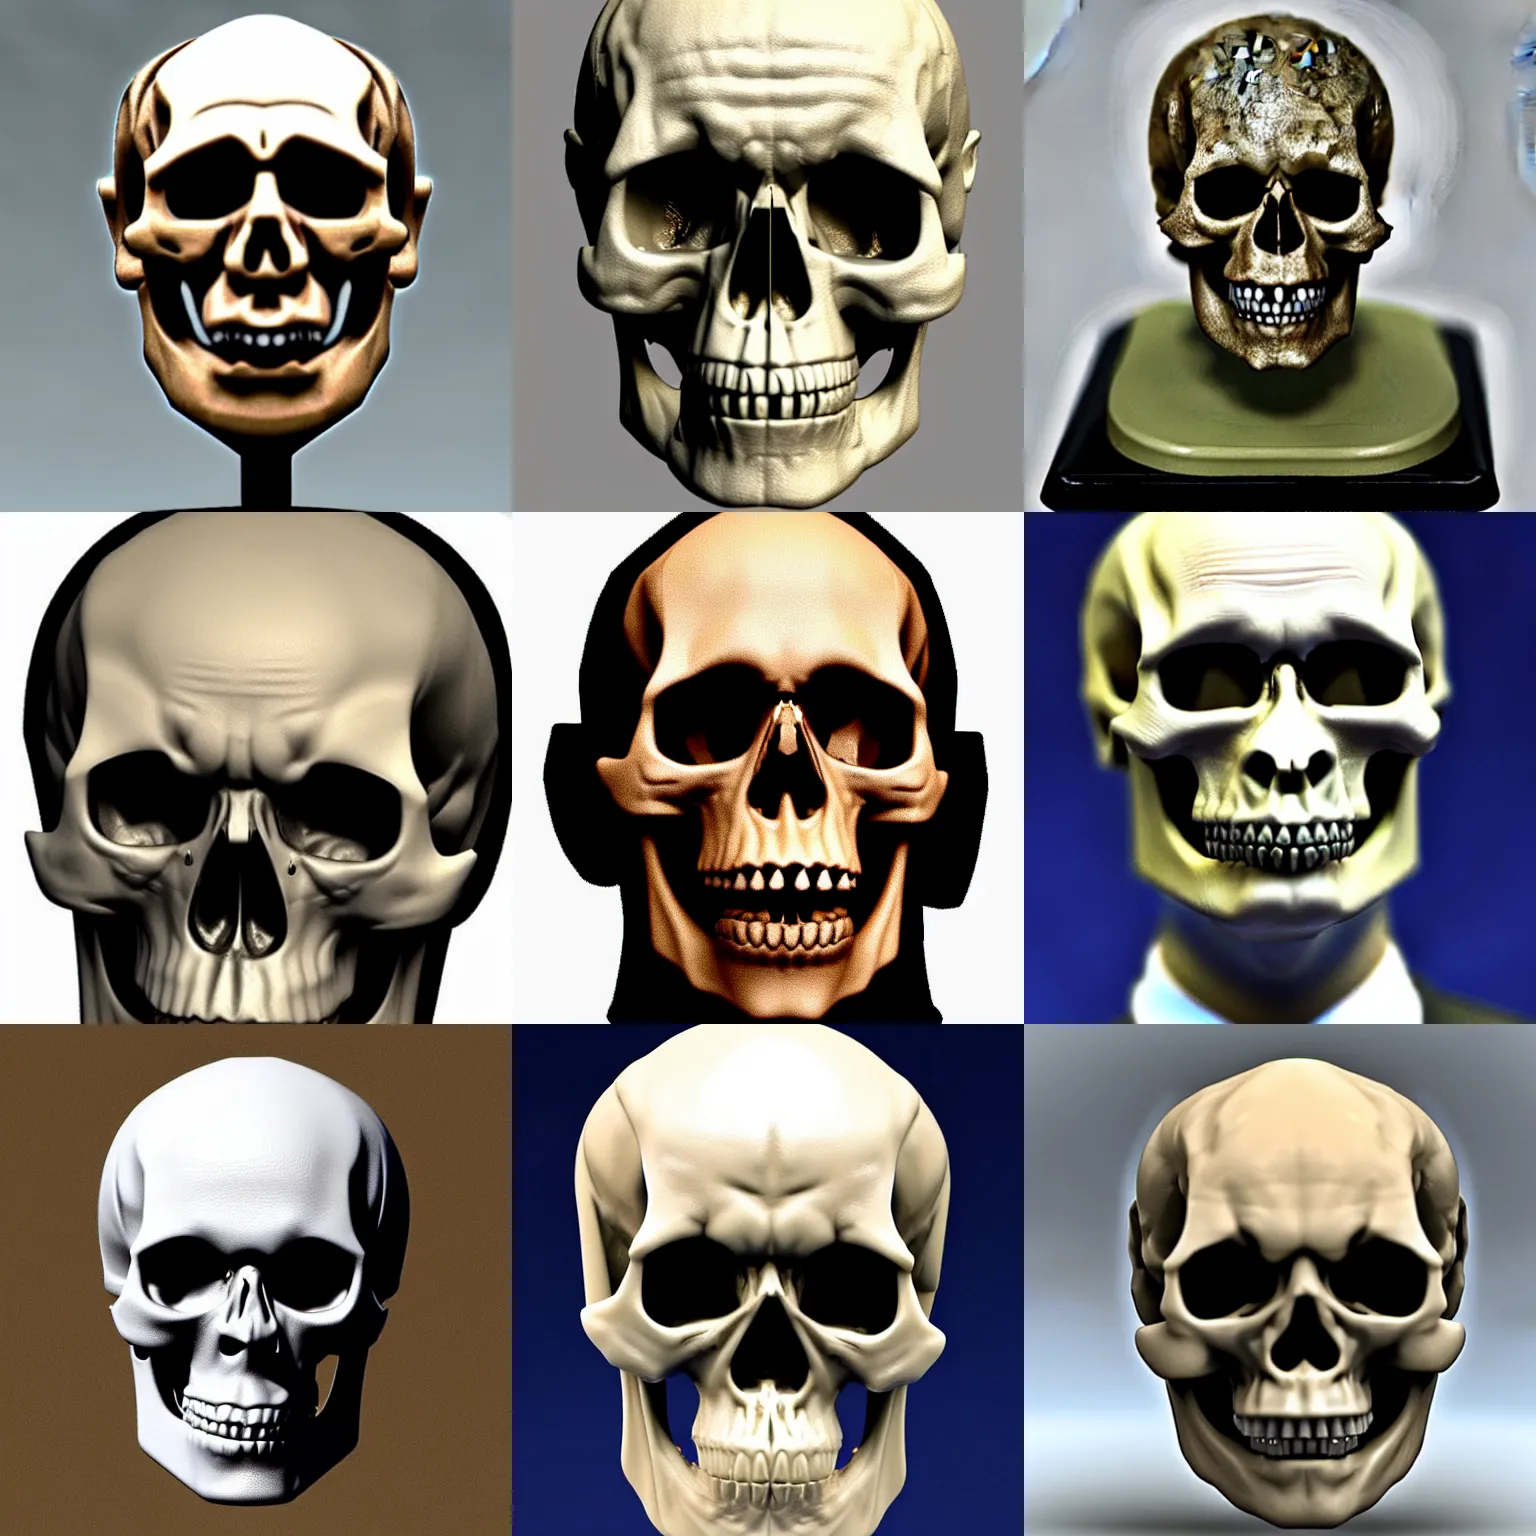 Prompt: vladimir putin skull - like head detailed photo